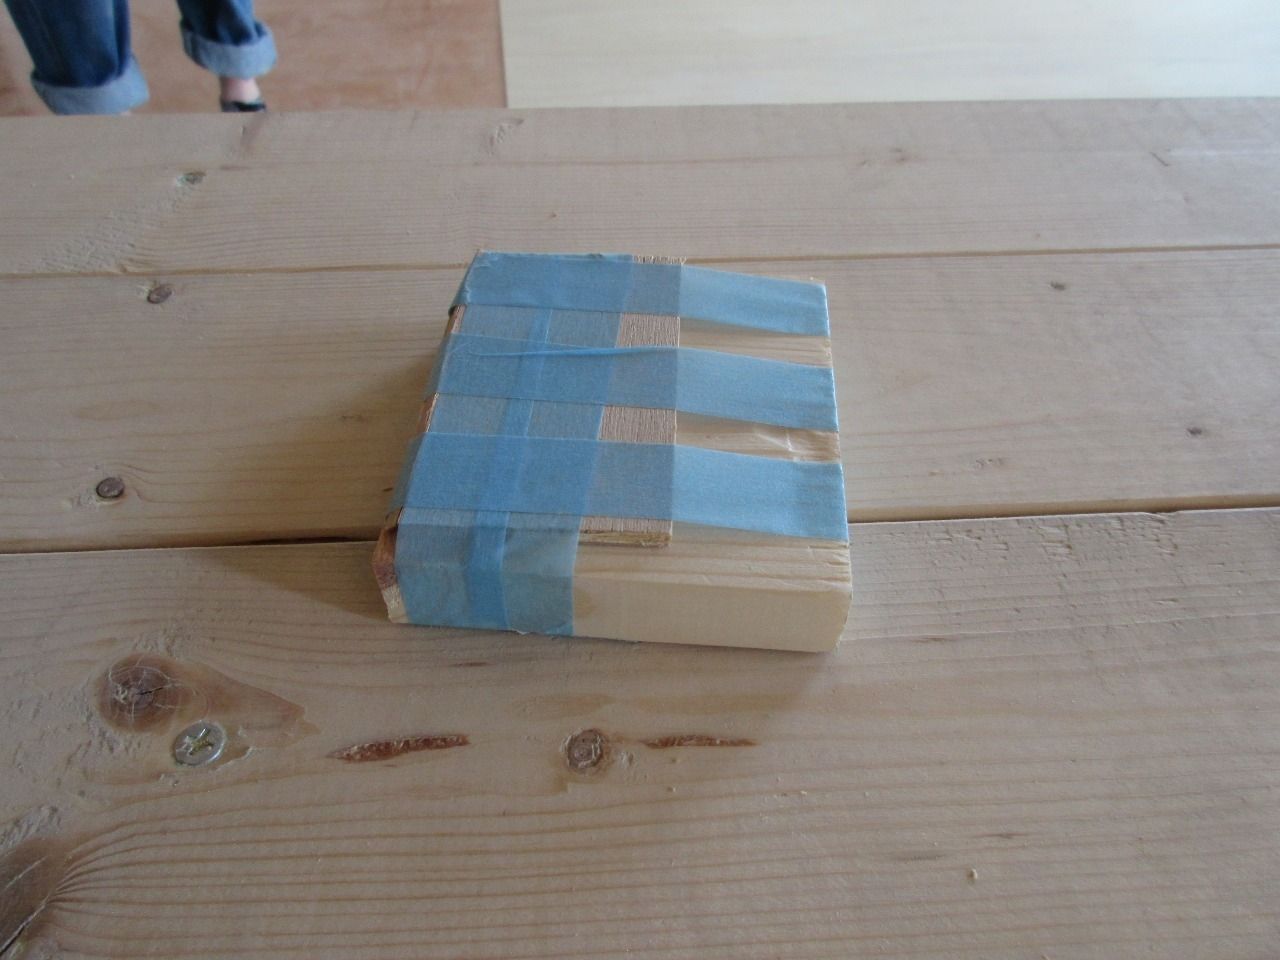 余っていた1×4(ワンバイフォー)材とベニヤ板を小さくカットして、マスキングテープでぐるぐる巻きにしただけです。
これを隙間ができている部分のベニヤ板の上に乗せて、隙間に差し込むだけです。